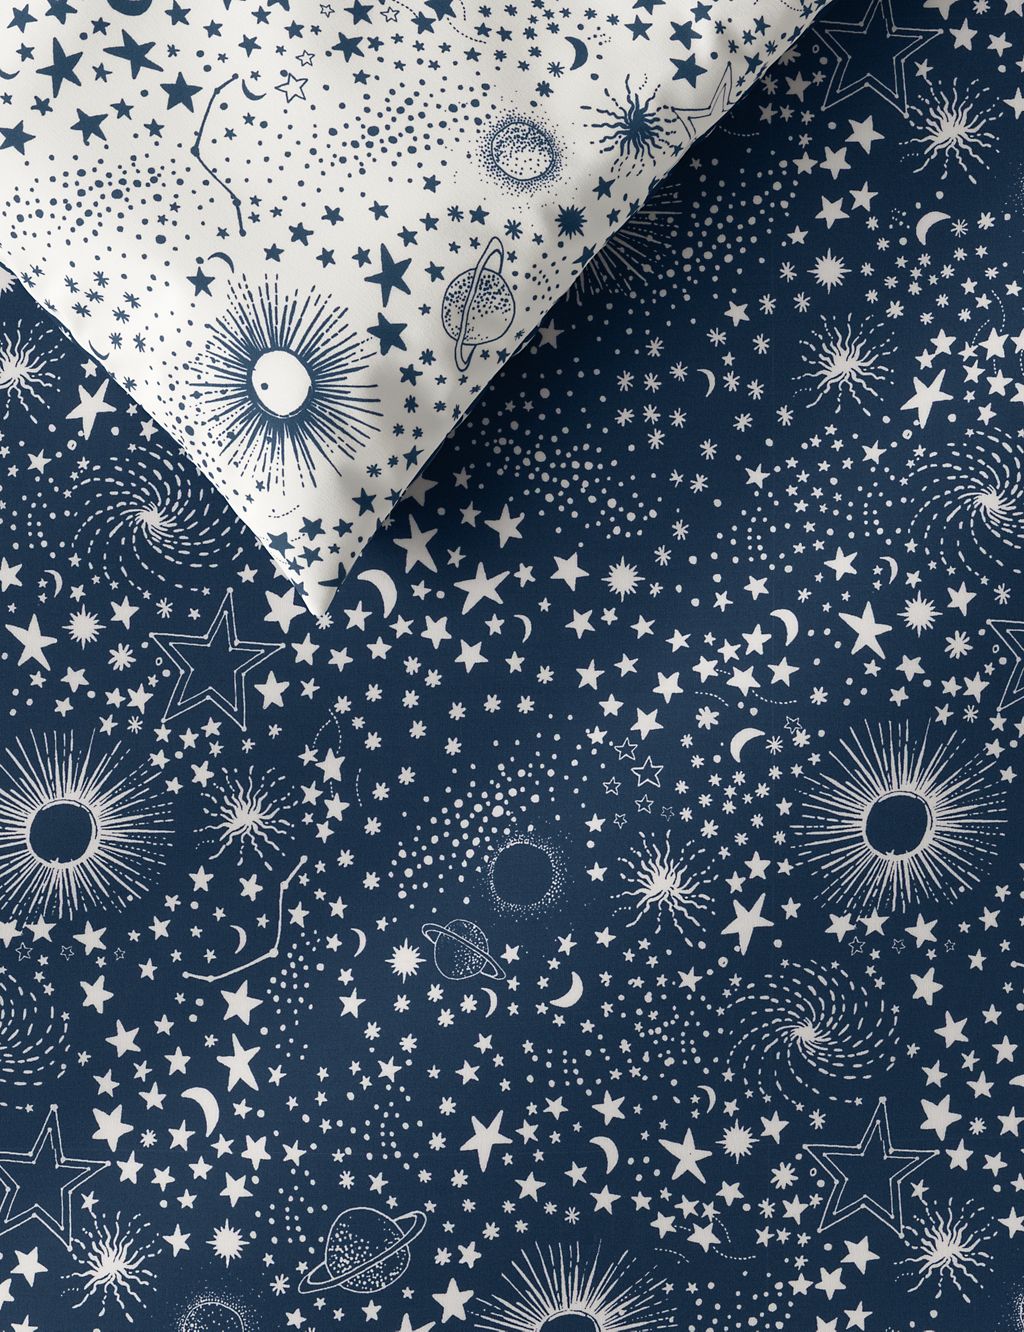 Constellation Cotton Blend Bedding Set 1 of 4